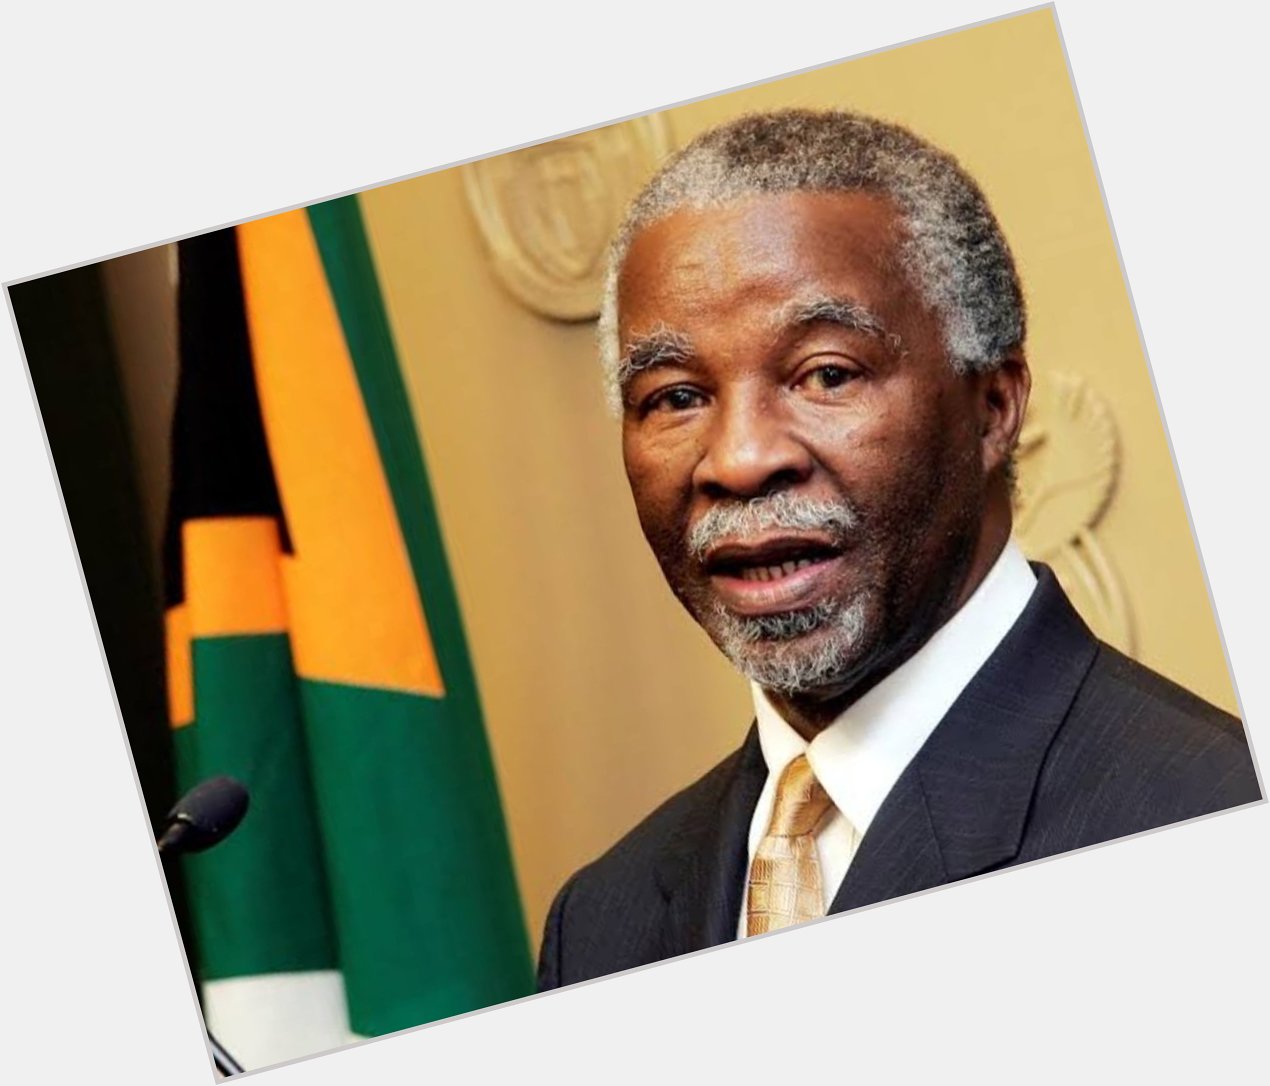 Happy Birthday to my favorite President ever, President Thabo Mbeki. 